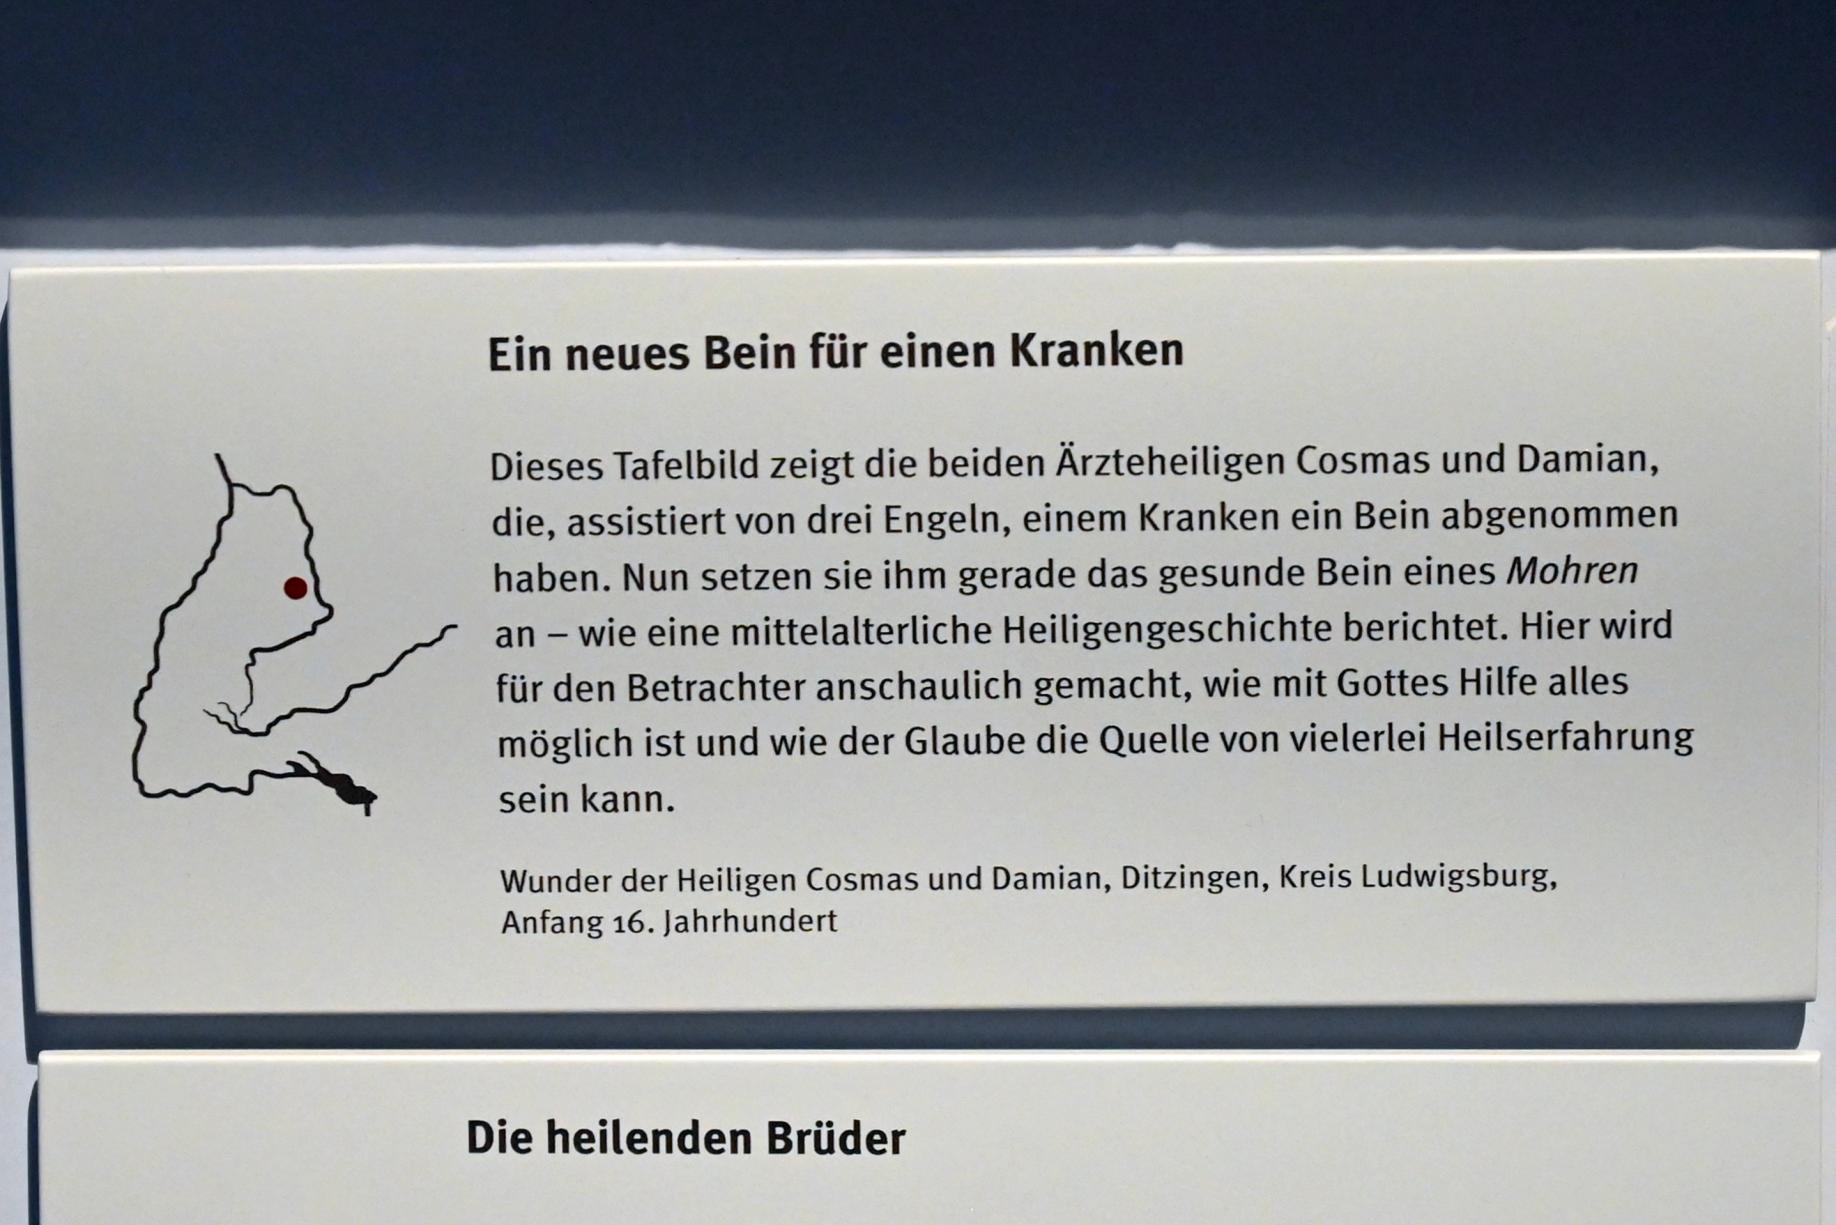 Wunder der Heiligen Cosmas und Damian, Stuttgart, Landesmuseum Württemberg, Mittelalter, Beginn 16. Jhd., Bild 2/2